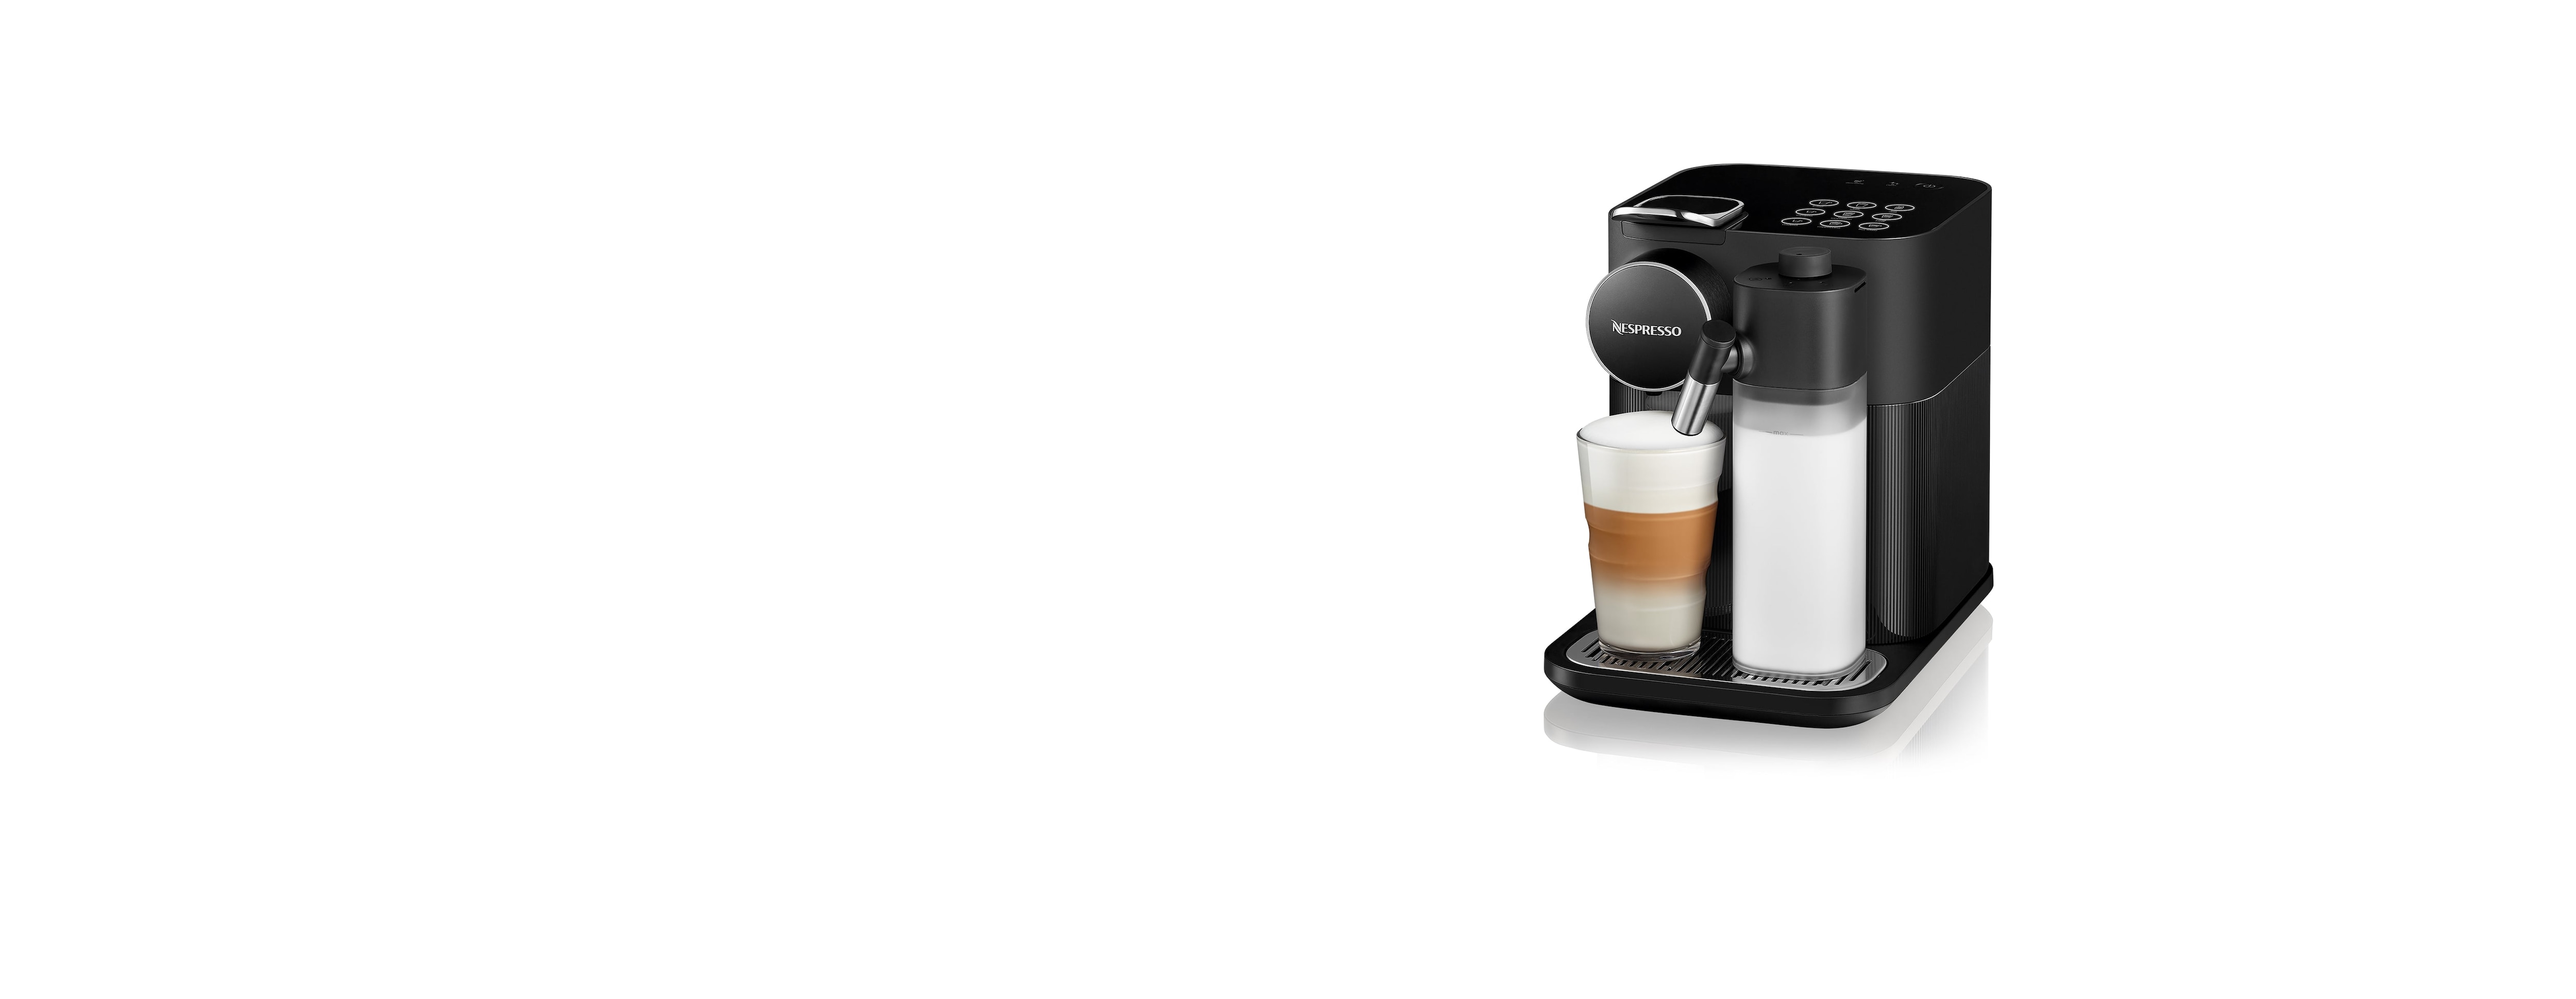 Contenitore Capsule - Nespresso Gran Lattissima - 5313265761